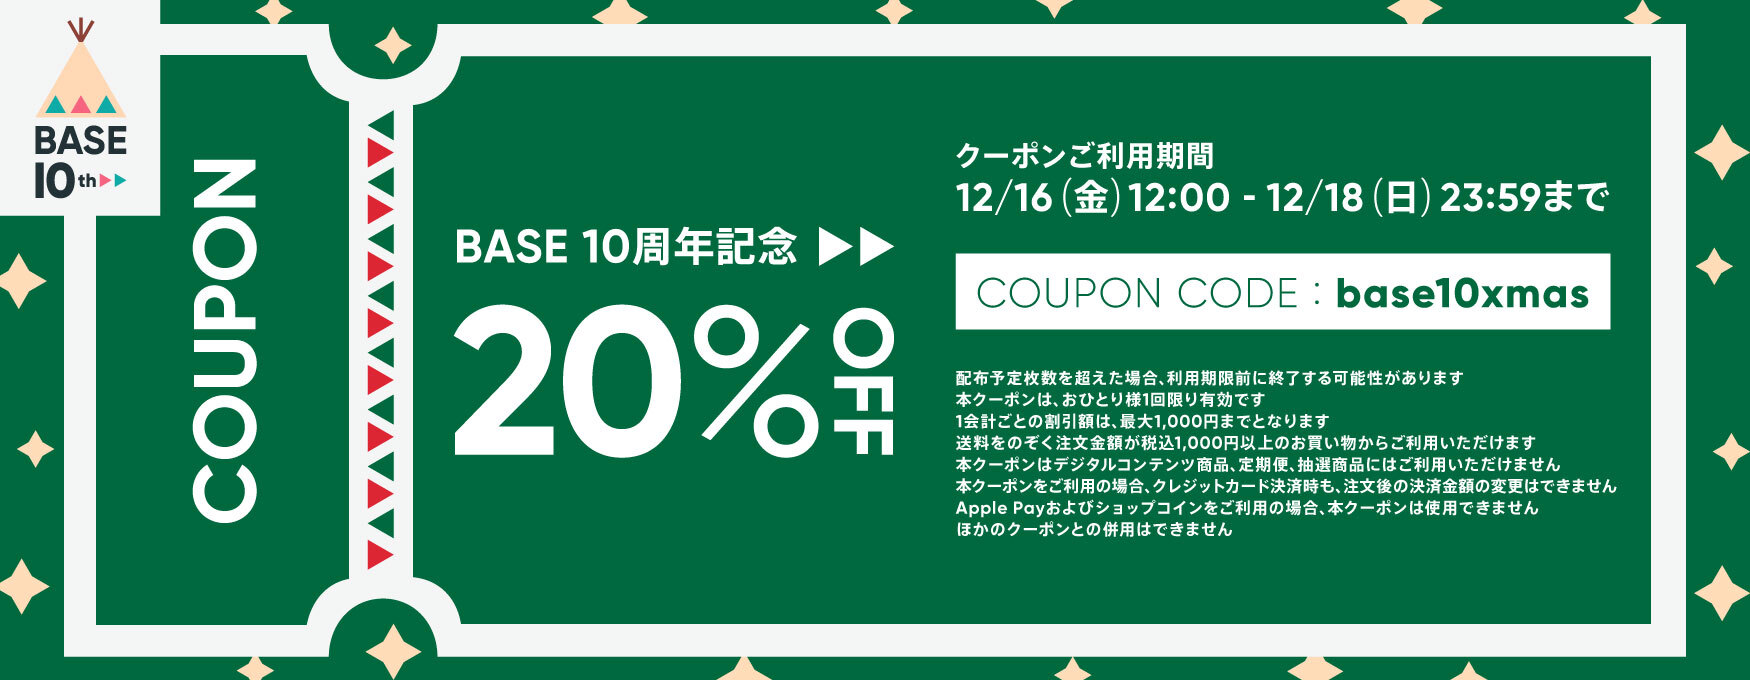 【12/16-18限定】BASE 20% OFF クーポン配布のお知らせ